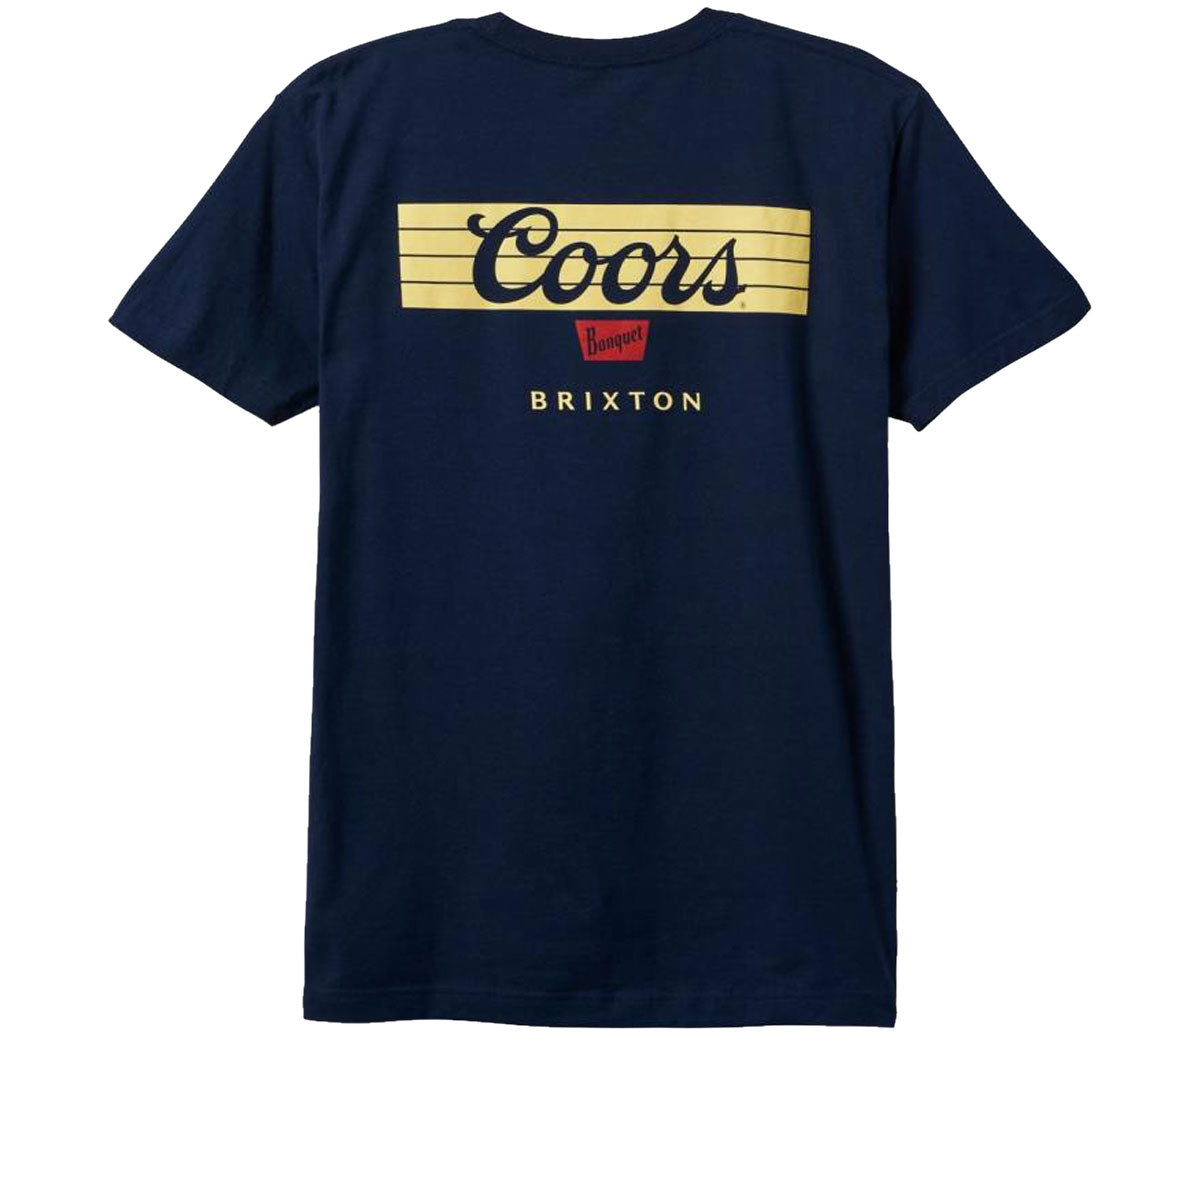 Brixton x Coors Bar T-Shirt - Navy image 1